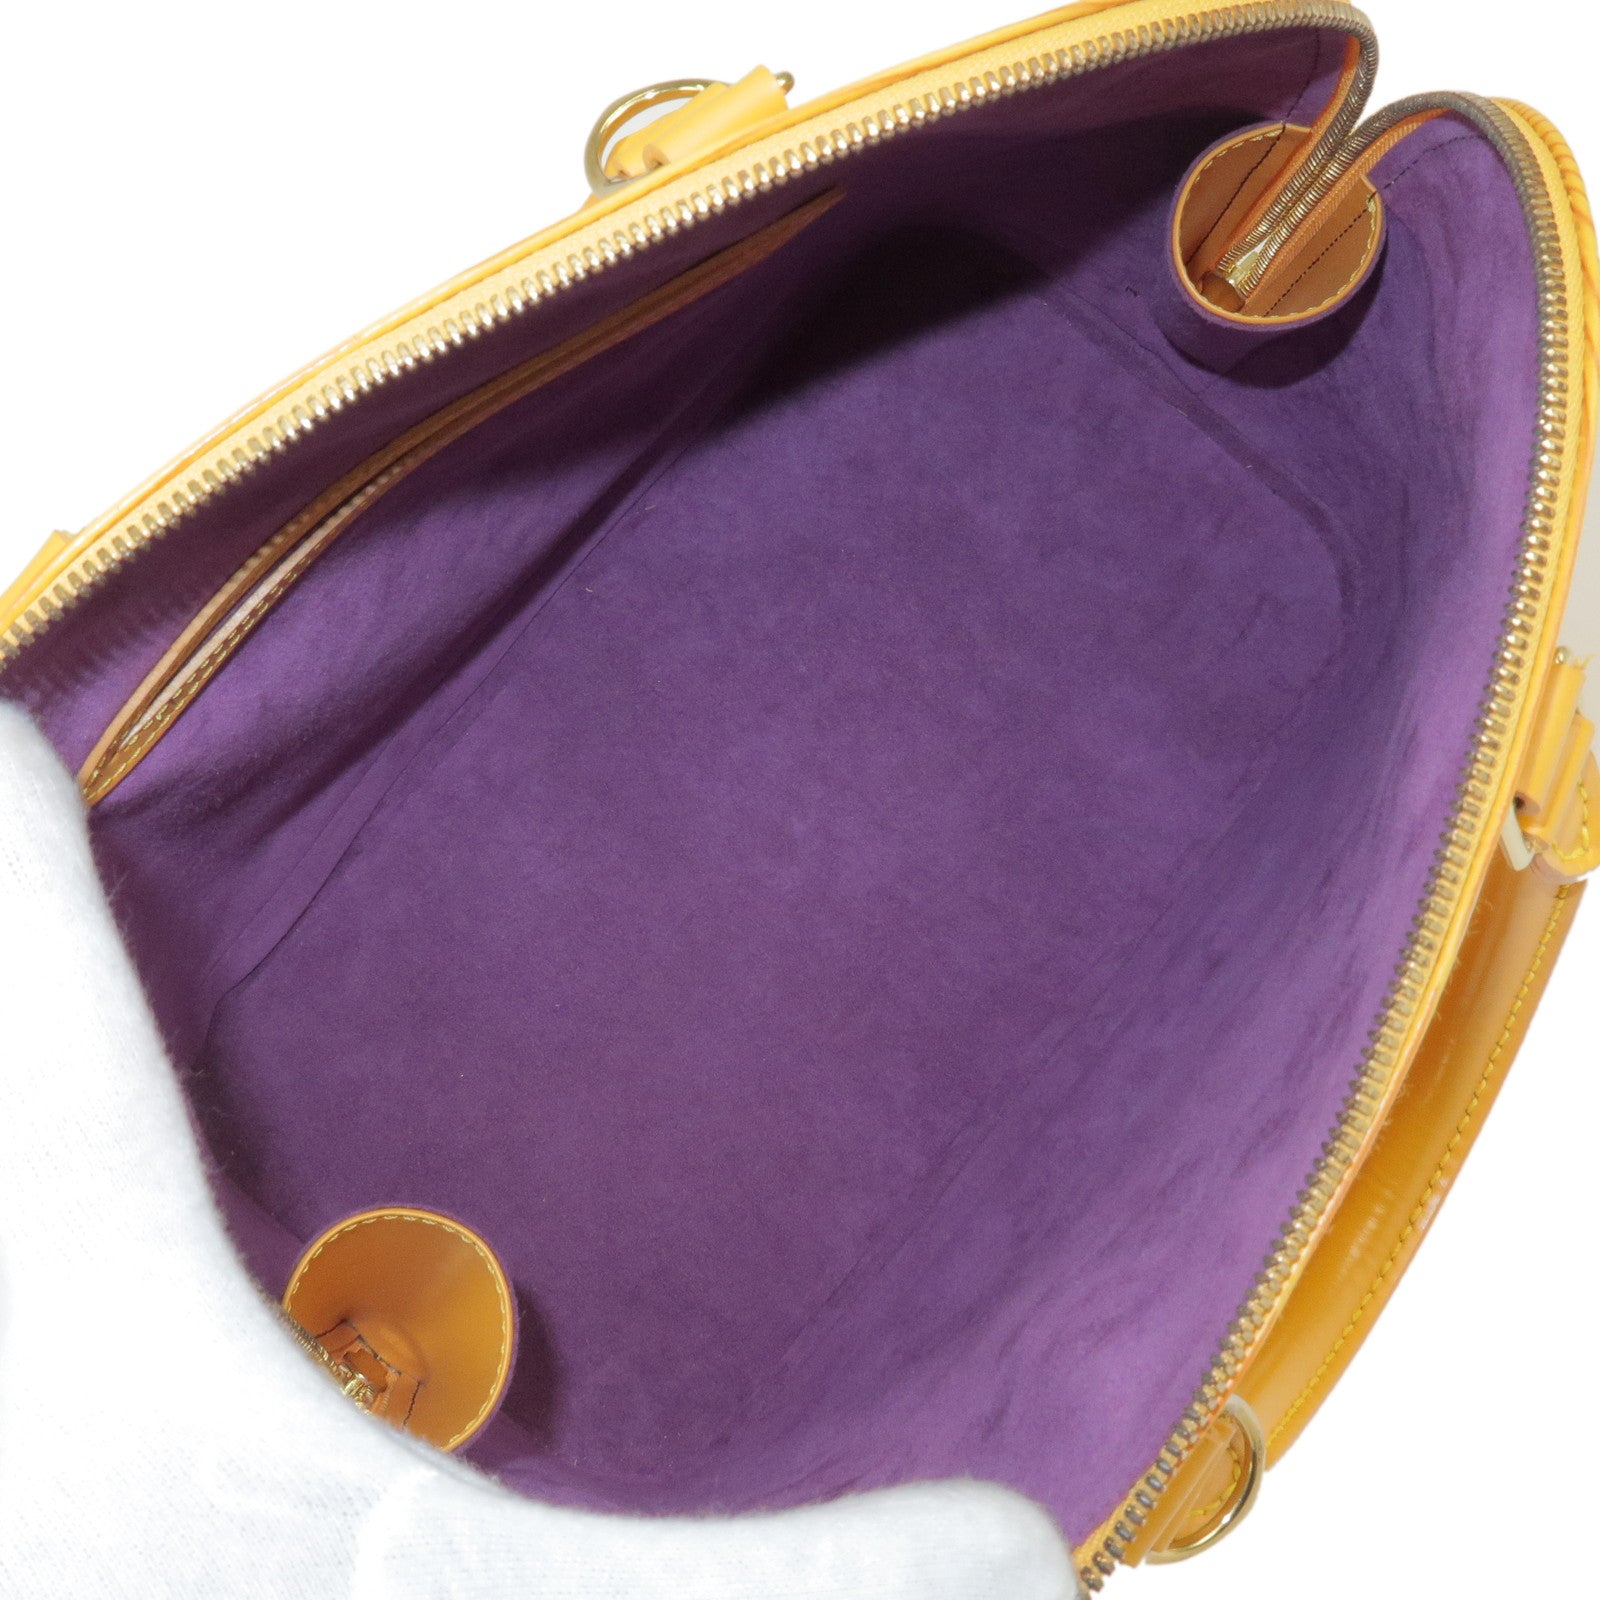 Louis Vuitton Tassil Yellow EPI Leather Alma PM Bag